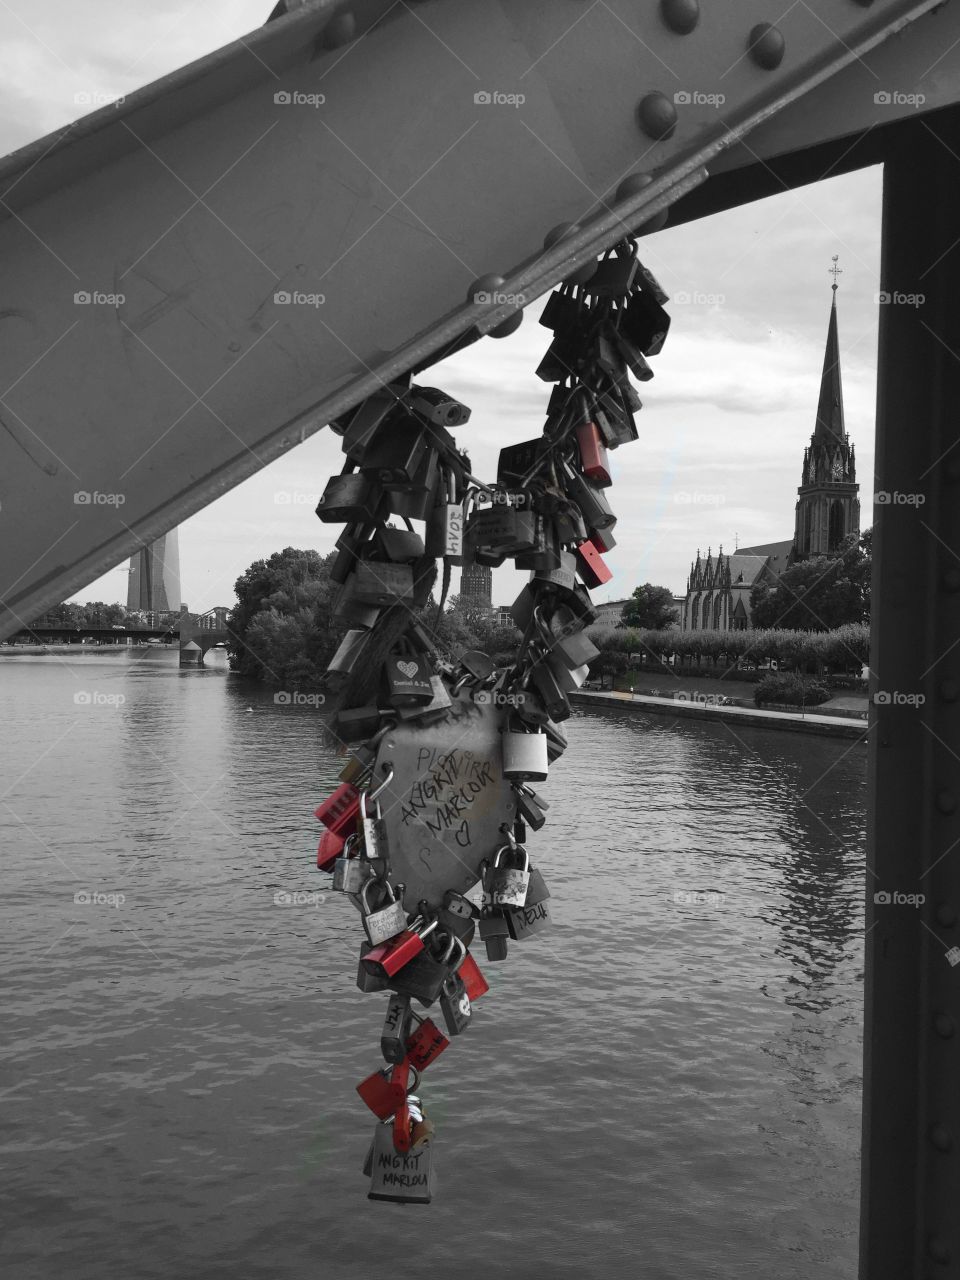 Red Love locks in Frankfurt!!